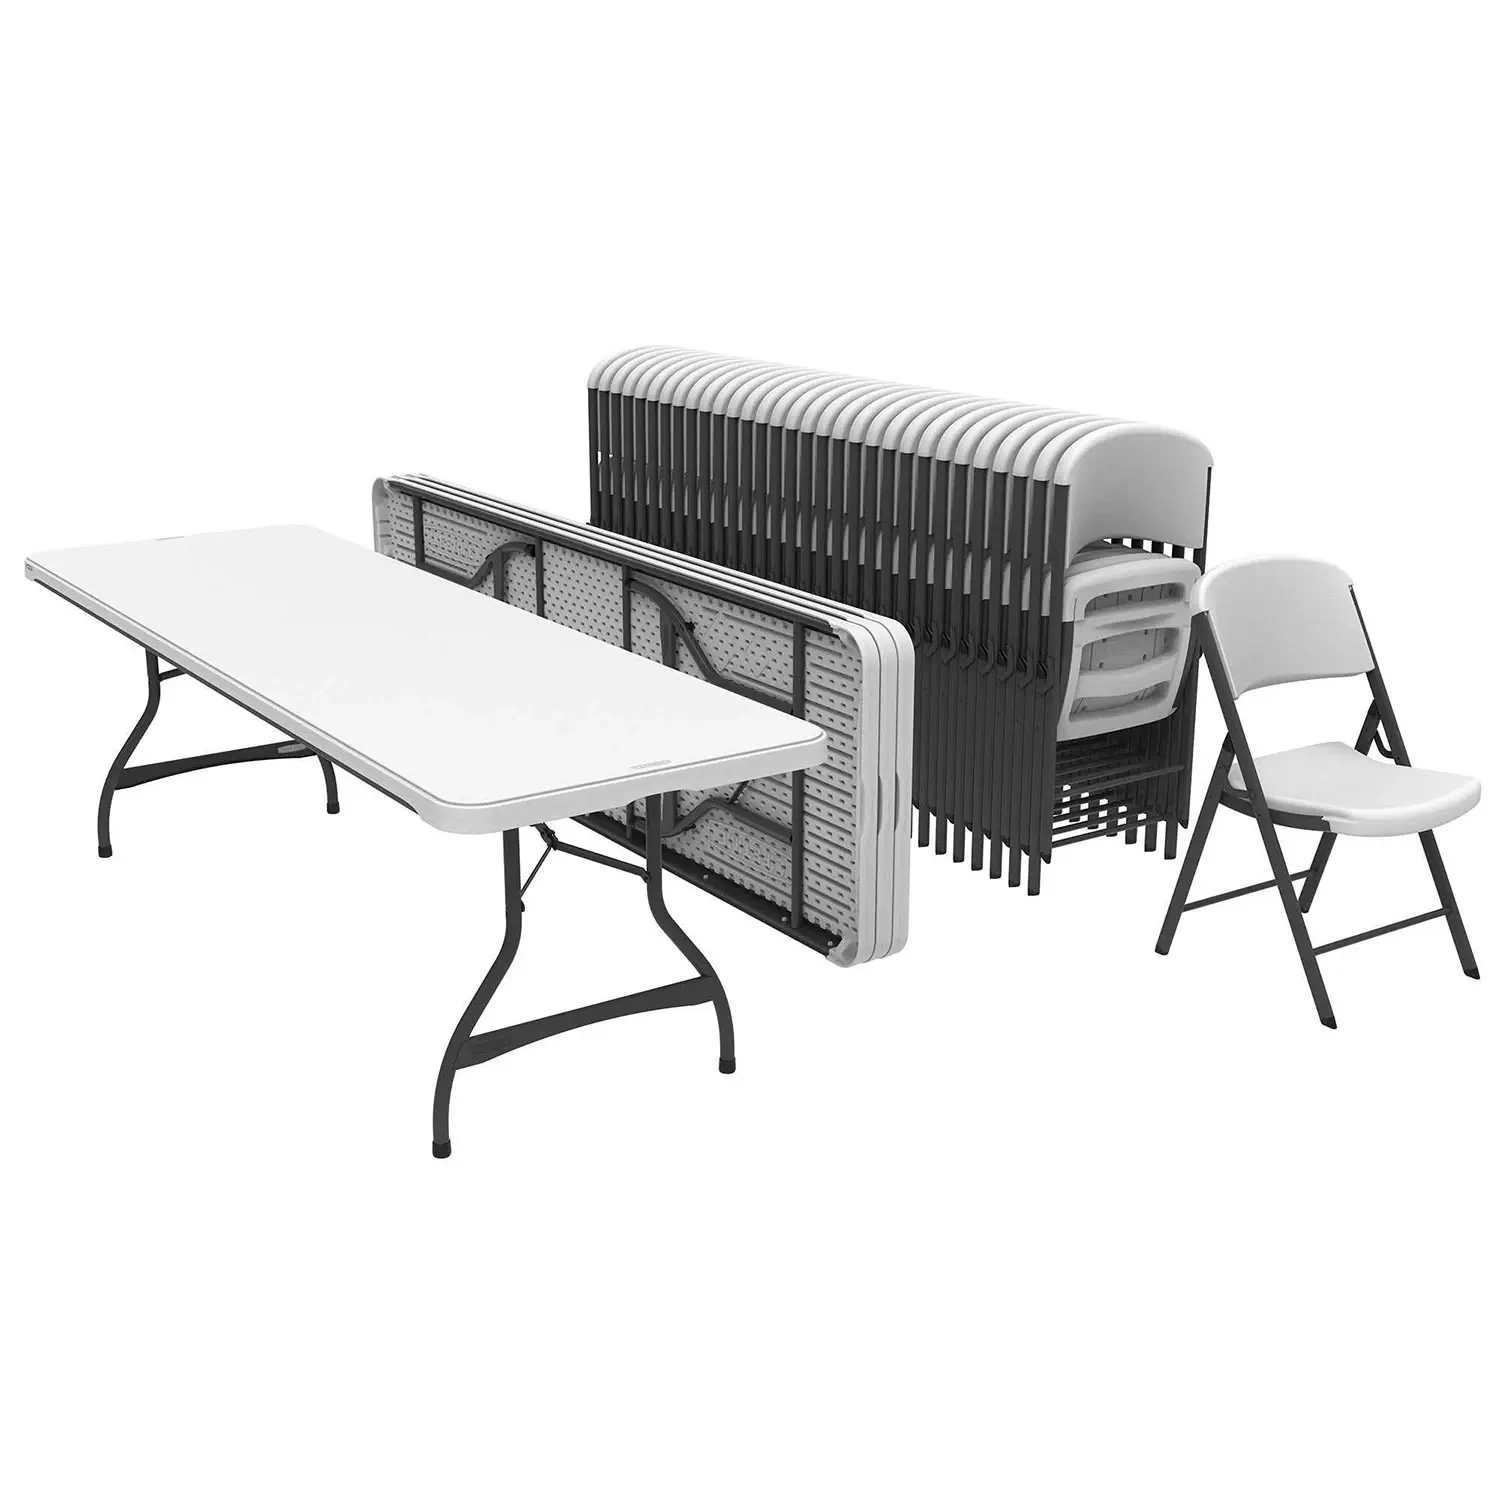 Table et chaises pliantes blanches en plastique de haute qualité pour 8 à 10 personnes, 6 pieds et 8 pieds, ensemble pour événements